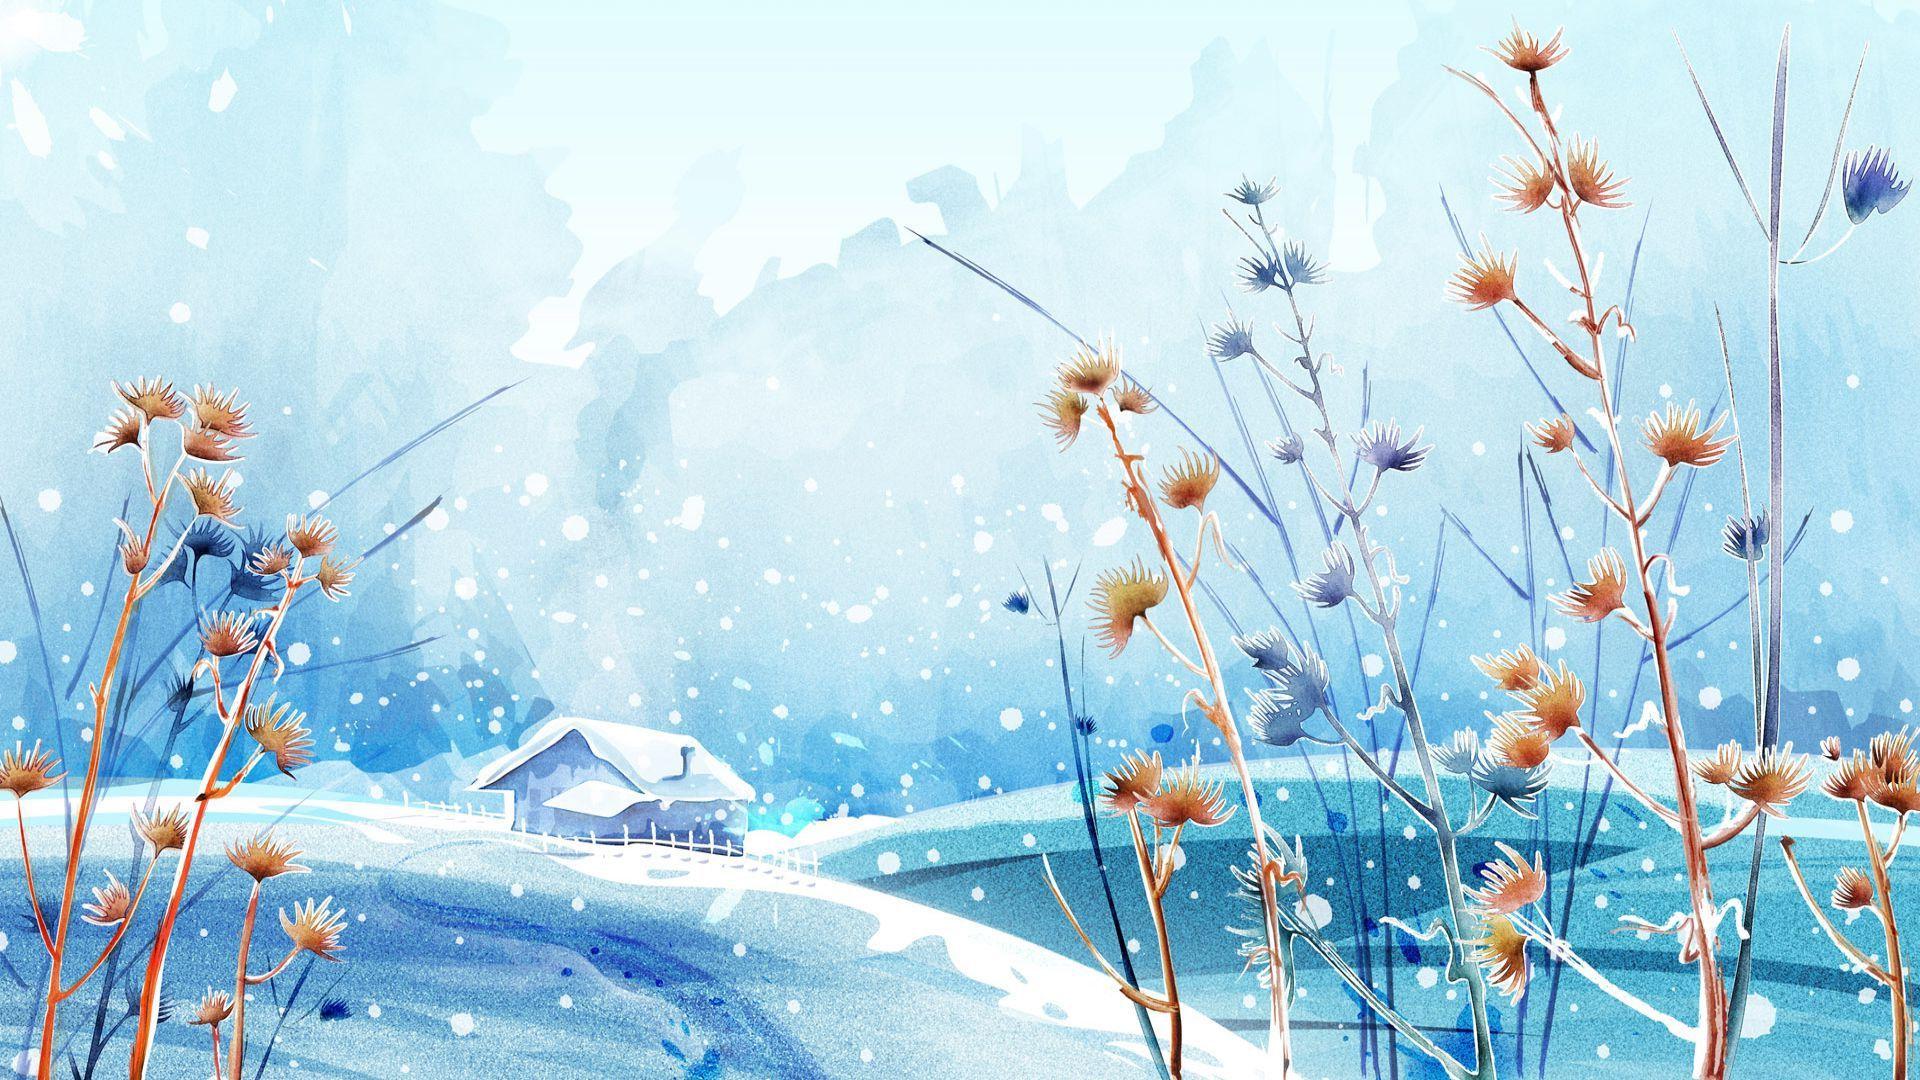 HD wallpaper Anime 5 Centimeters Per Second snow snowing cold  temperature  Wallpaper Flare